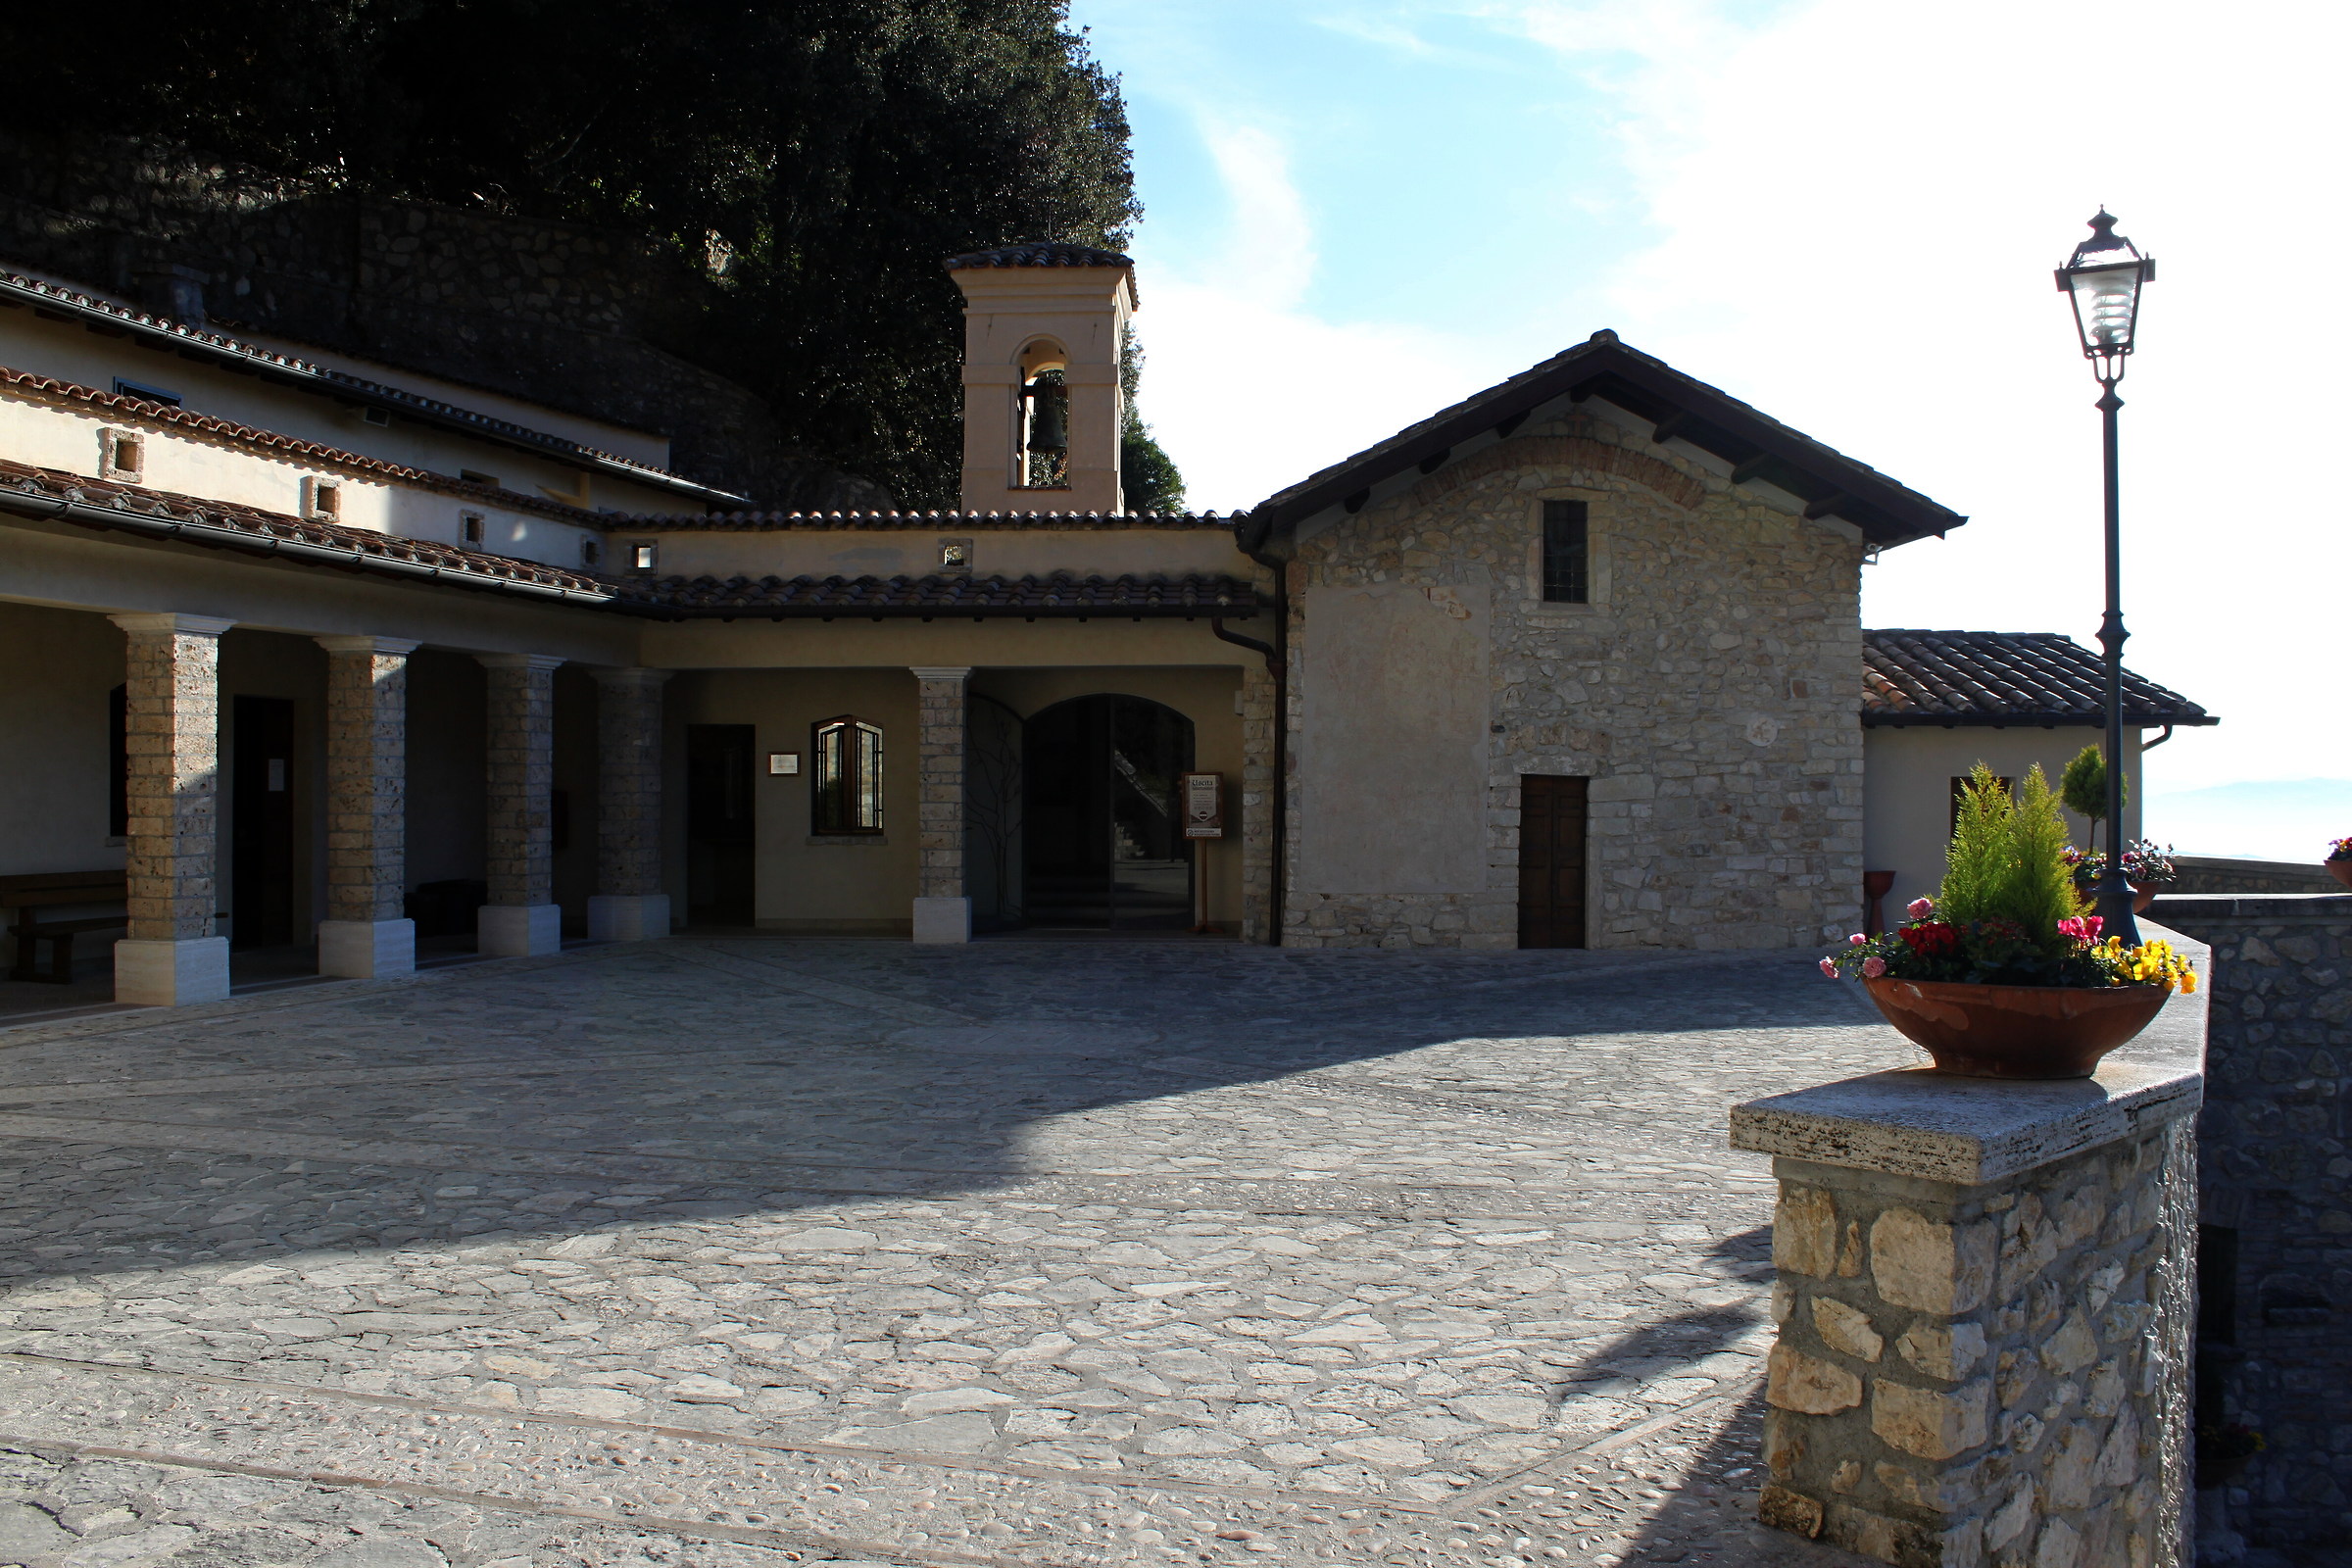 Square of the Sanctuary of Greccio...